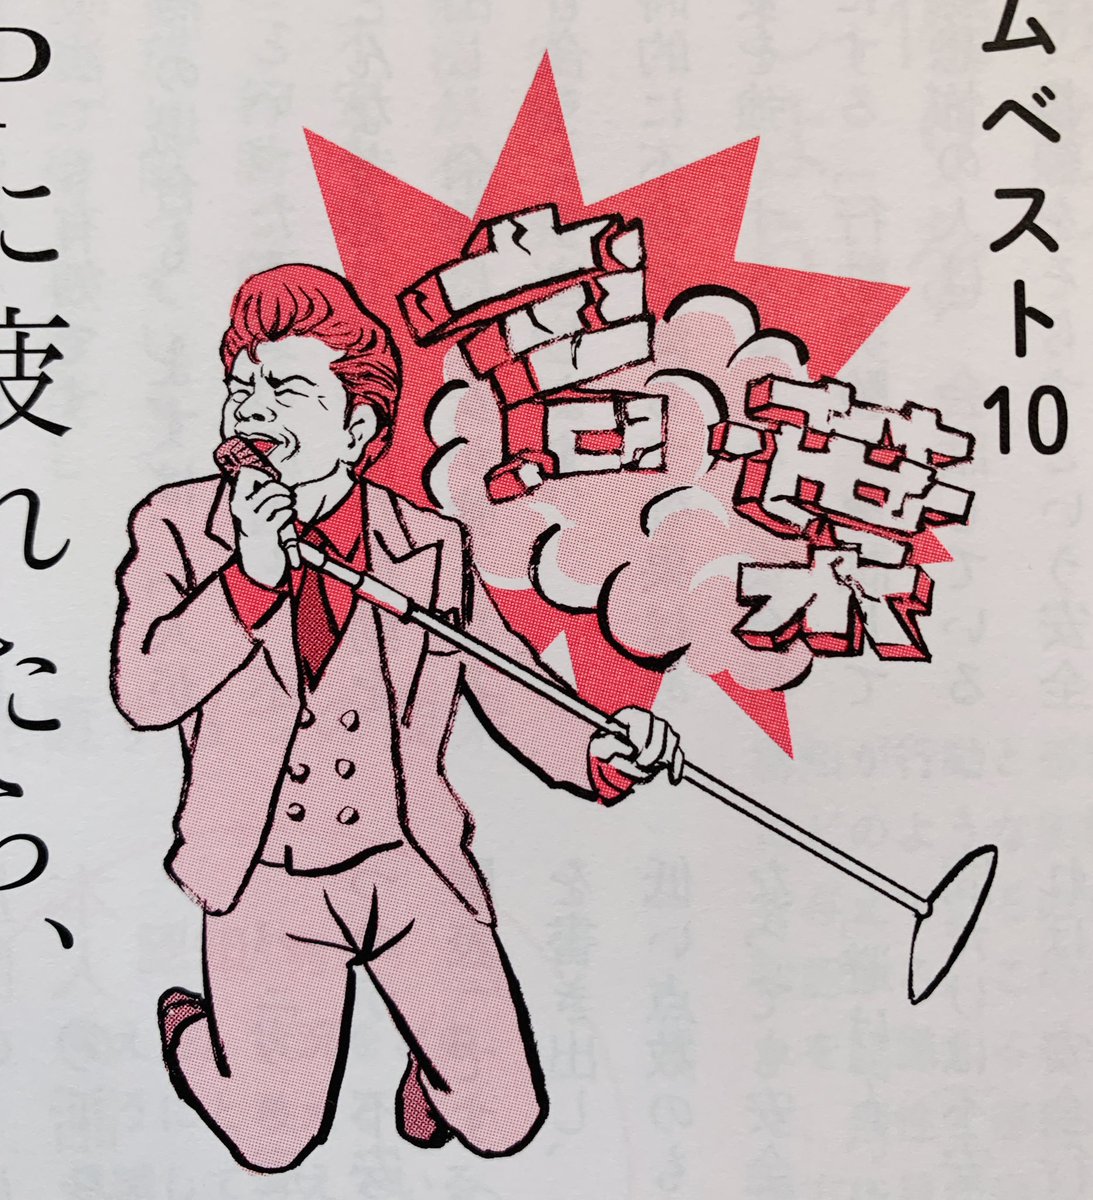 「暮しの手帖」の音楽コーナーで浜野謙太さんを描きました。浜野さんの選曲テーマは「言葉から逃れられる10選」。
ジェームスブラウンに見えるかもしれないけど顔は浜野謙太さんだ（在日ファンクのステージキマってる）ゲロッパ！